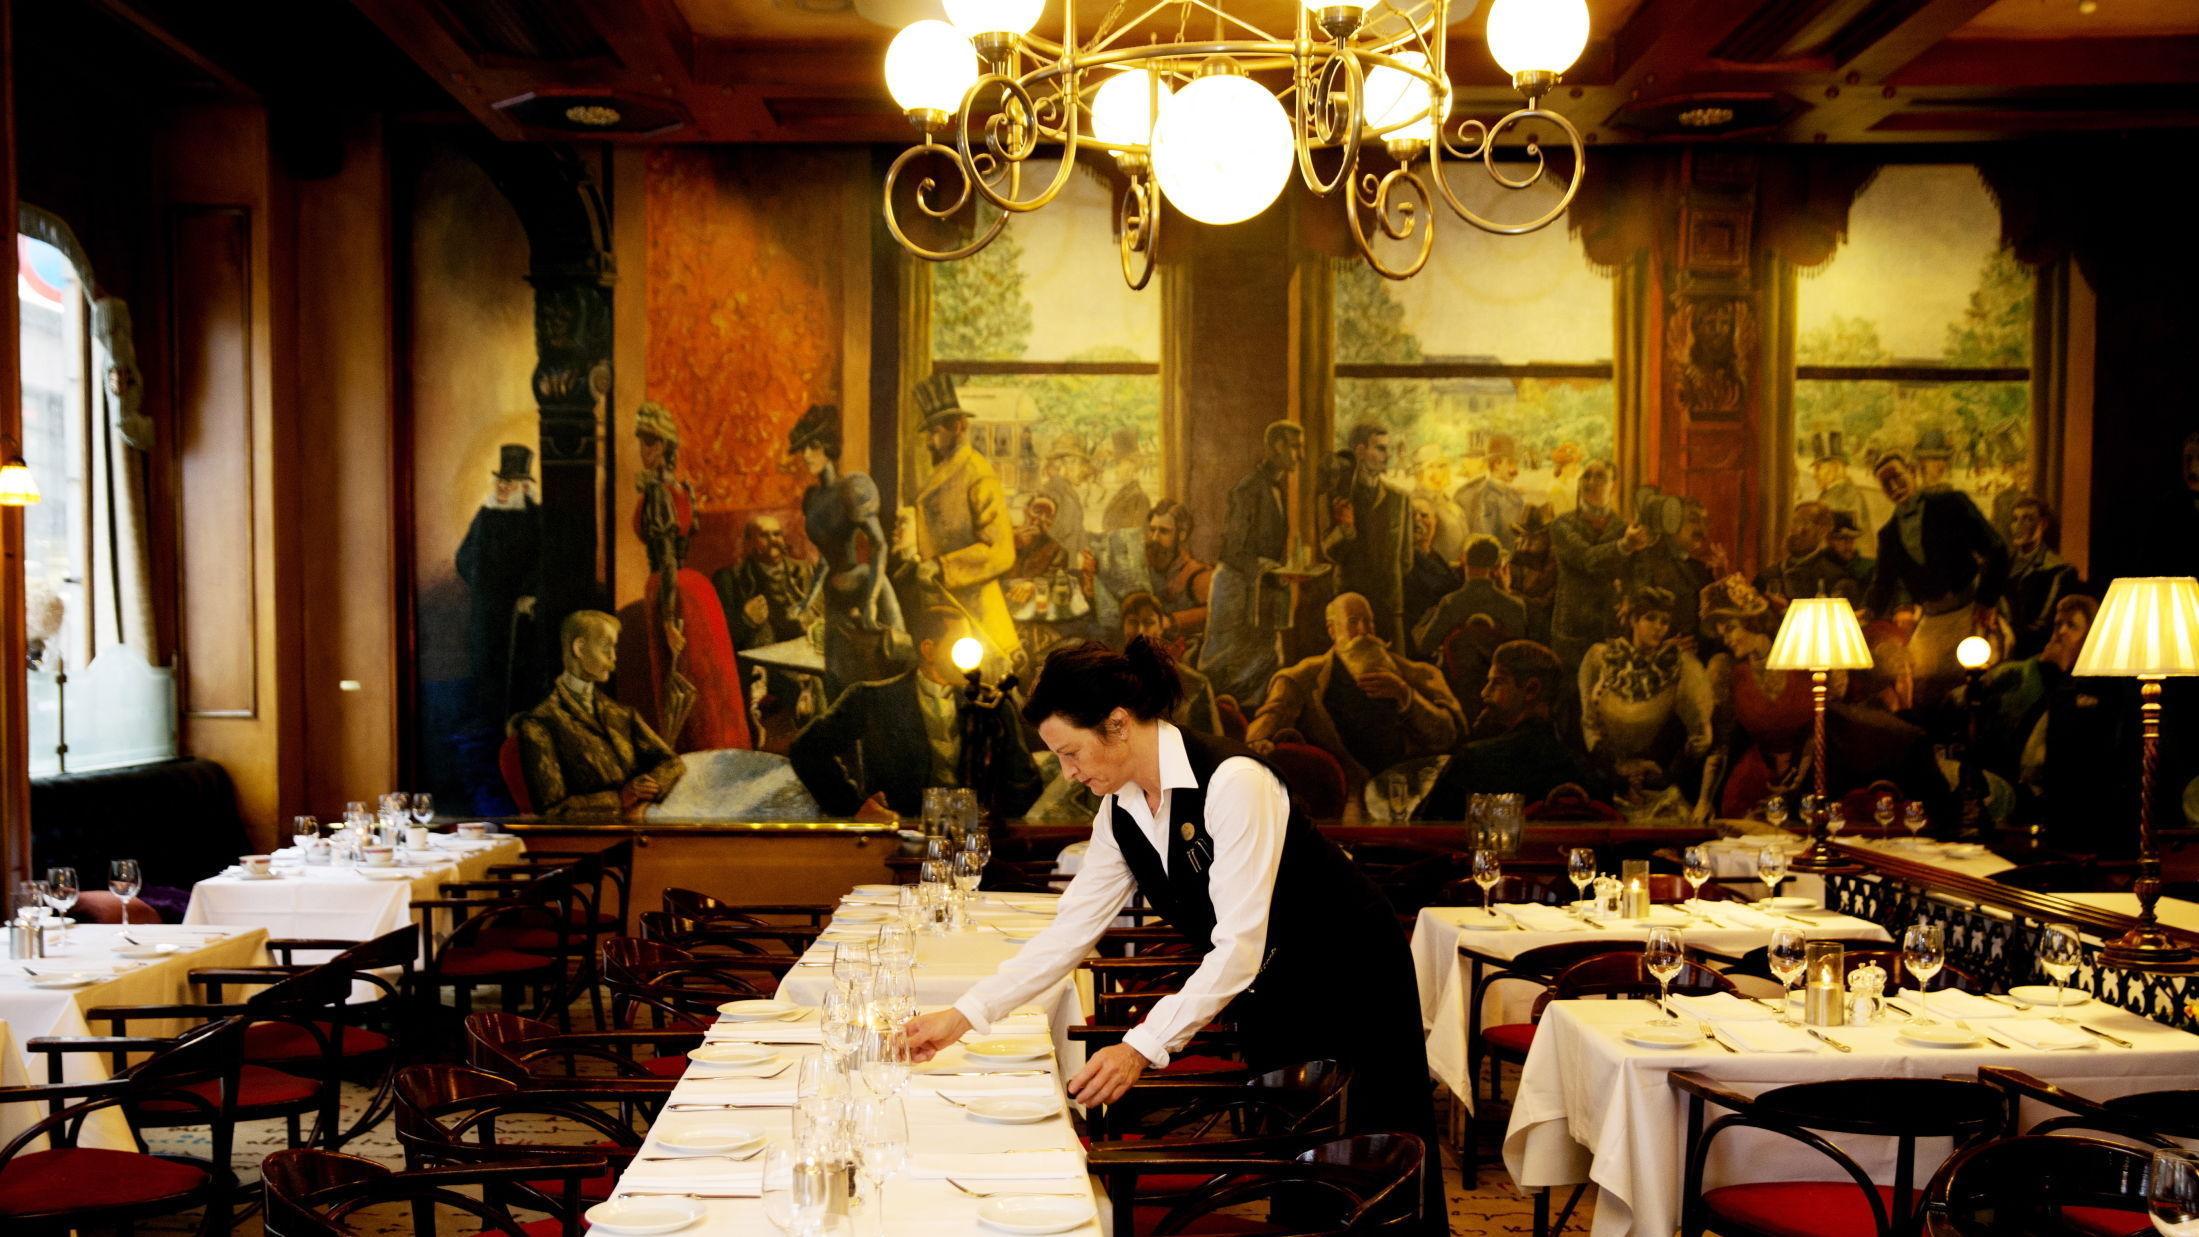 TRADISJONSRIKT: Mang en stor forfatter har fått servert frokost ved Grand Café i Karl Johans gate i Oslo. En rekke av dem er avbildet i Per Kroghs berømte maleri som pryder den ene veggen i lokalet. Foto: Janne Møller-Hansen/VG